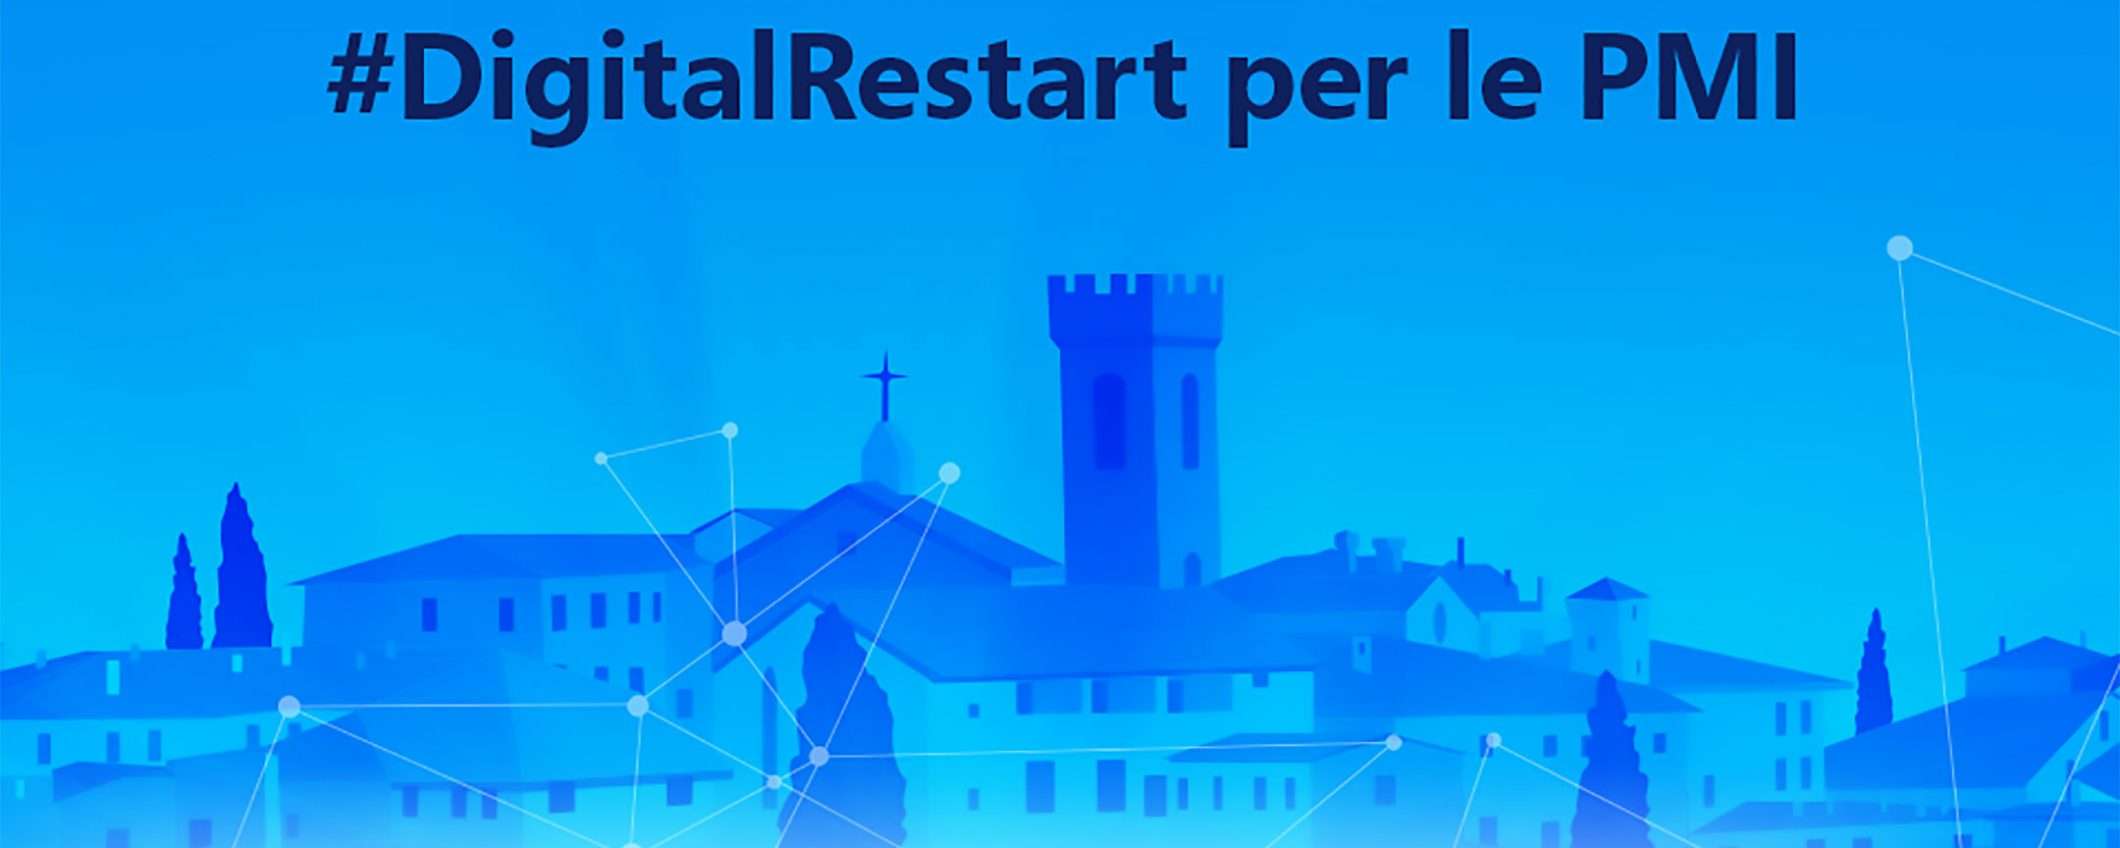 Ambizione Italia #DigitalRestart: un eBook per le PMI